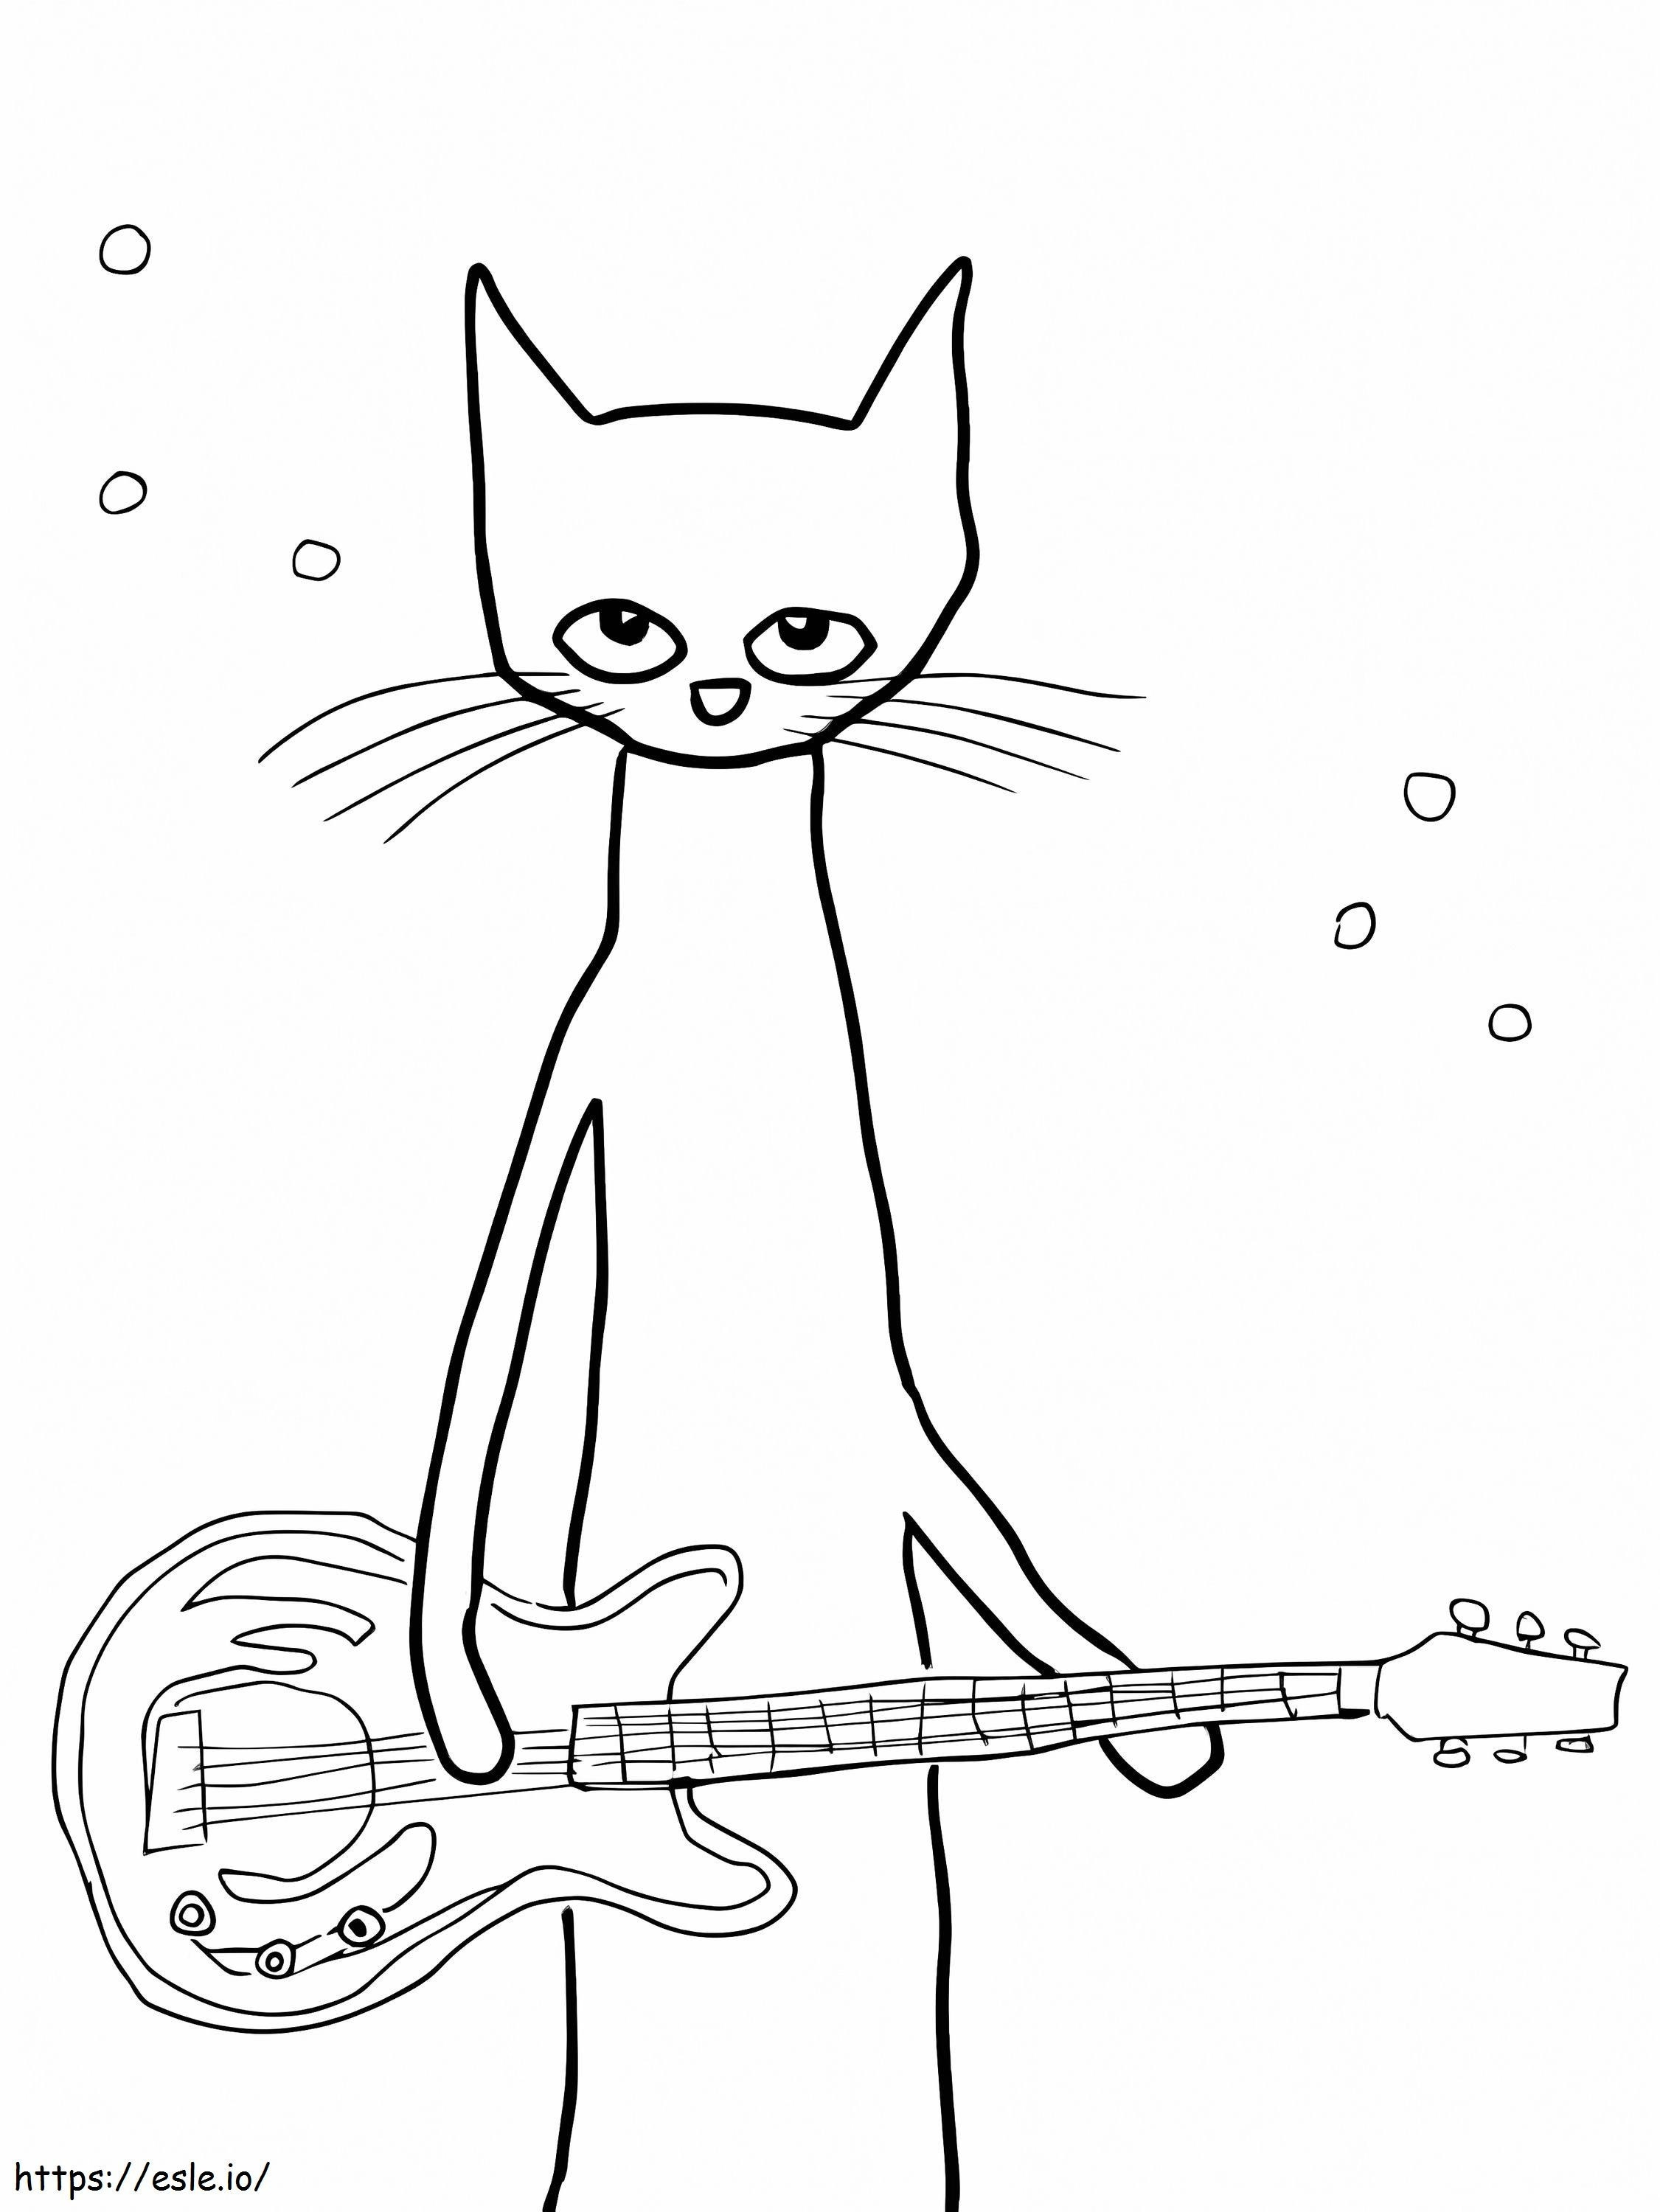 El guitarrista Pete el gato. para colorear